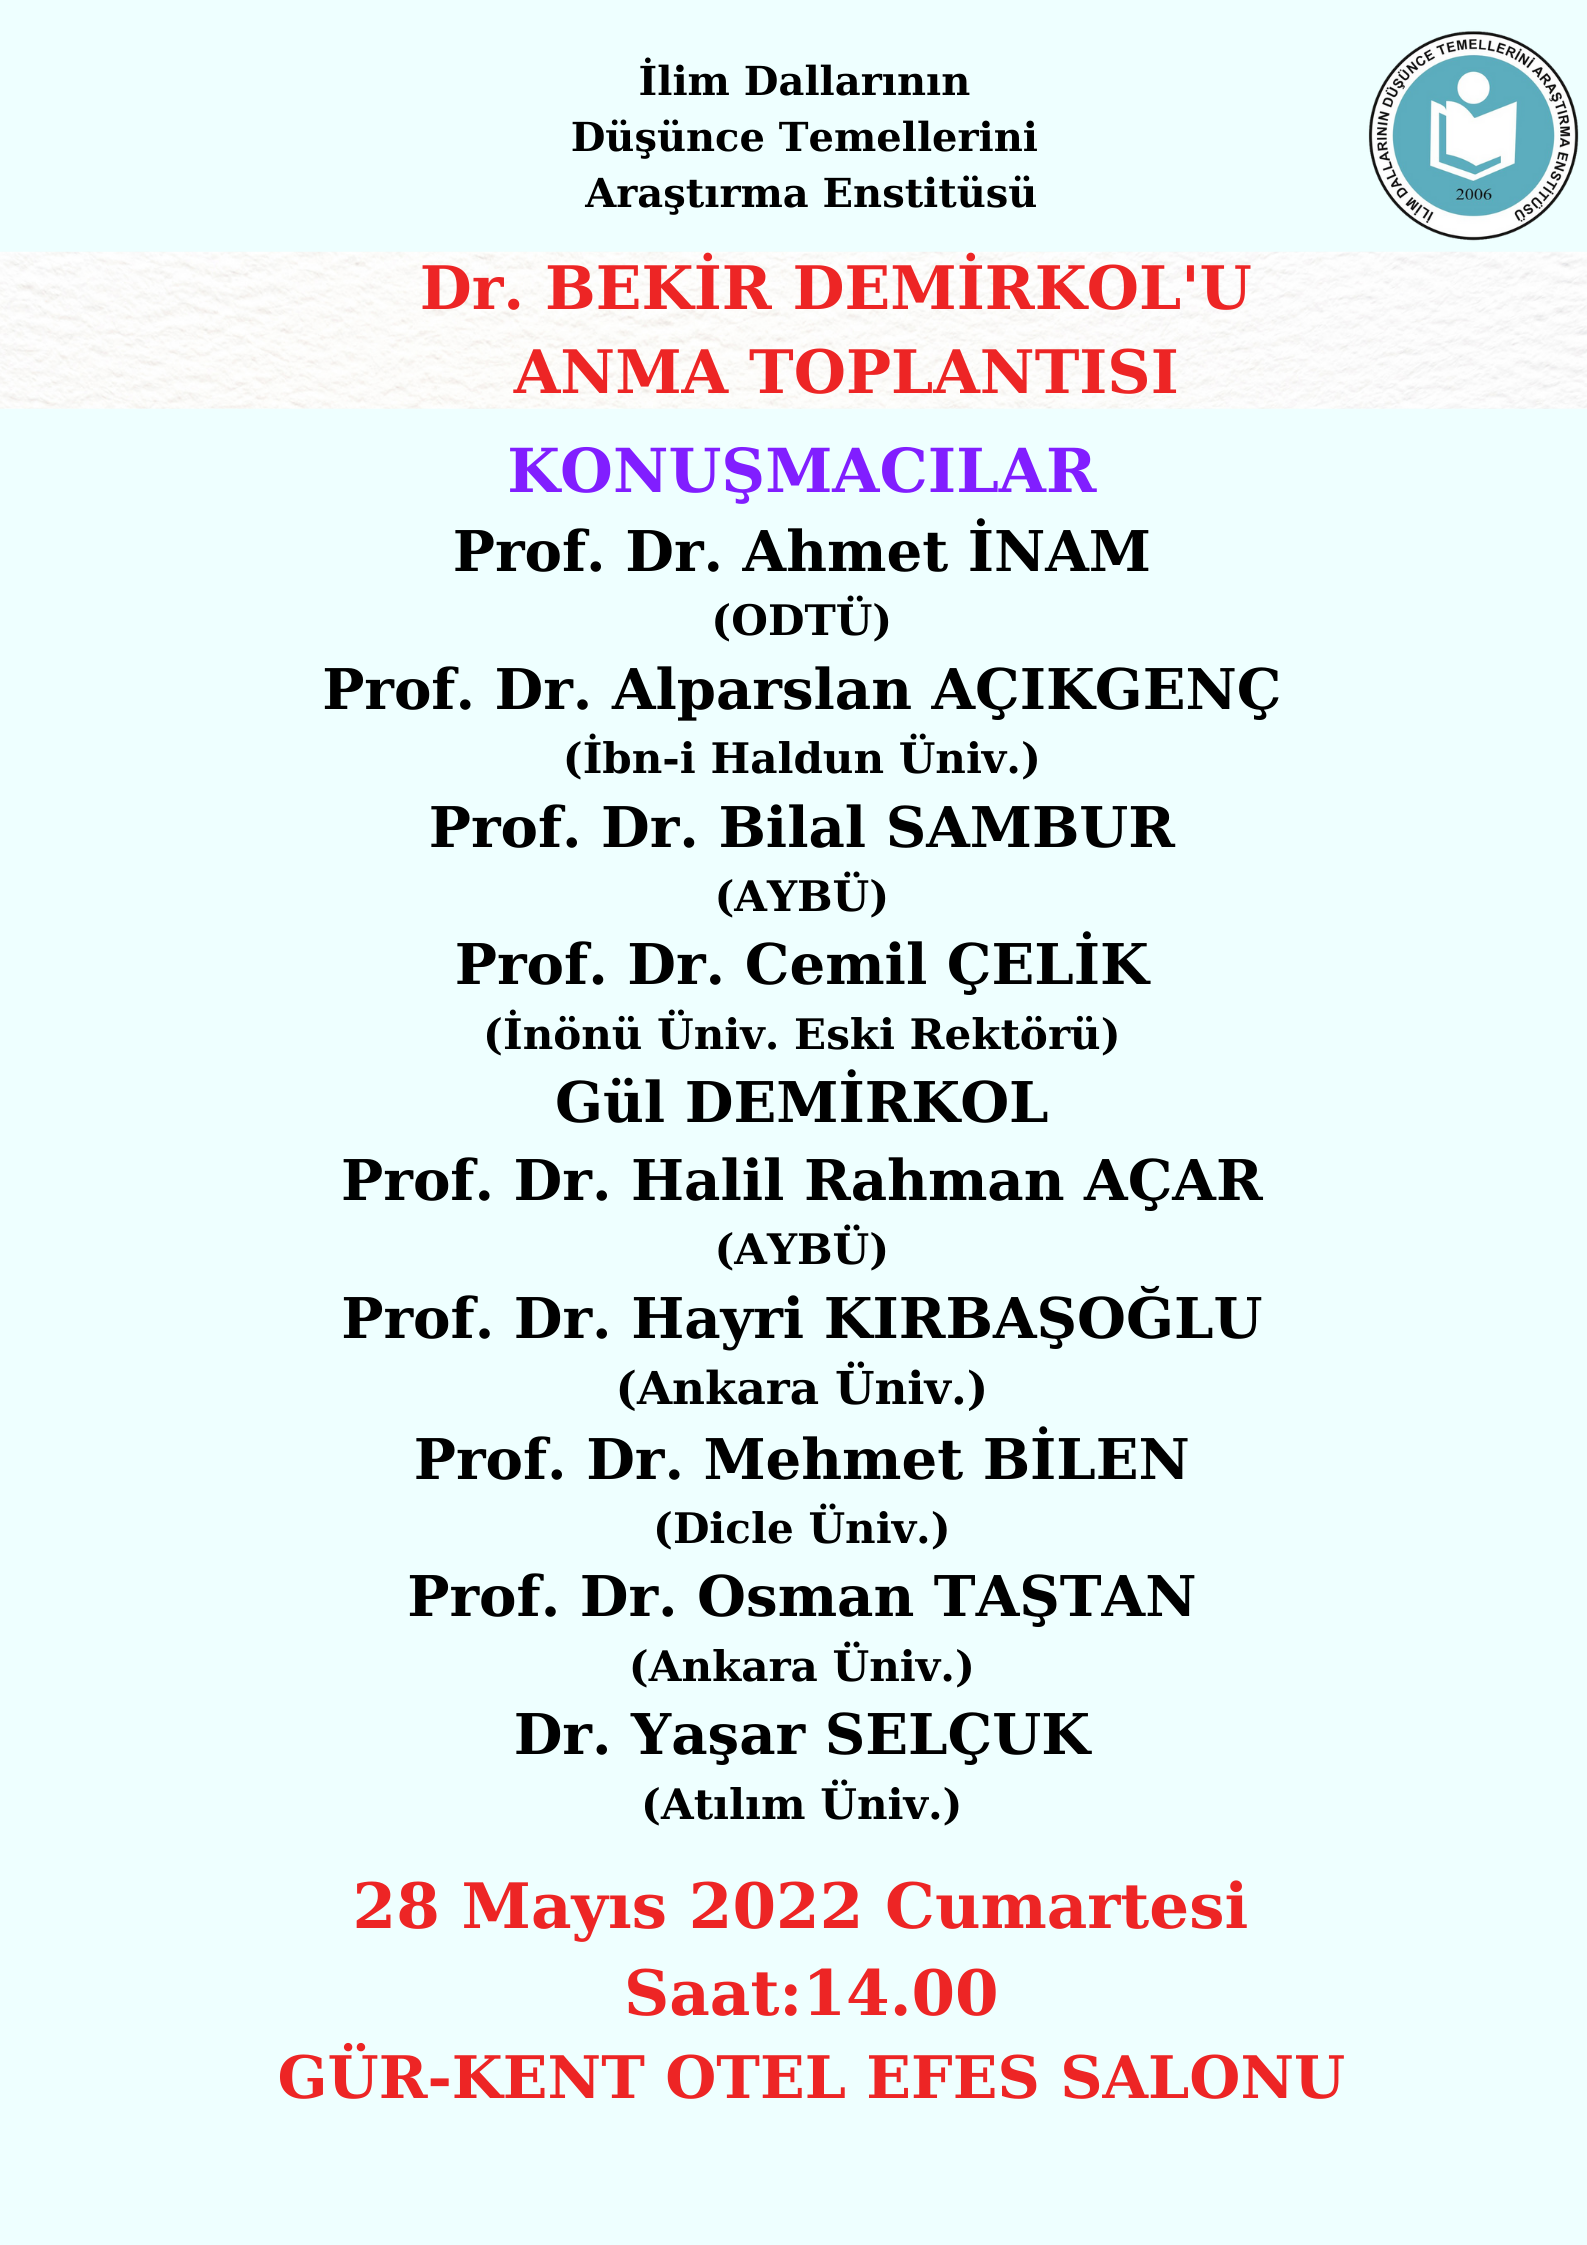 Dr. Bekir Demirkol'u Anma Toplantısı -28.05.2022-